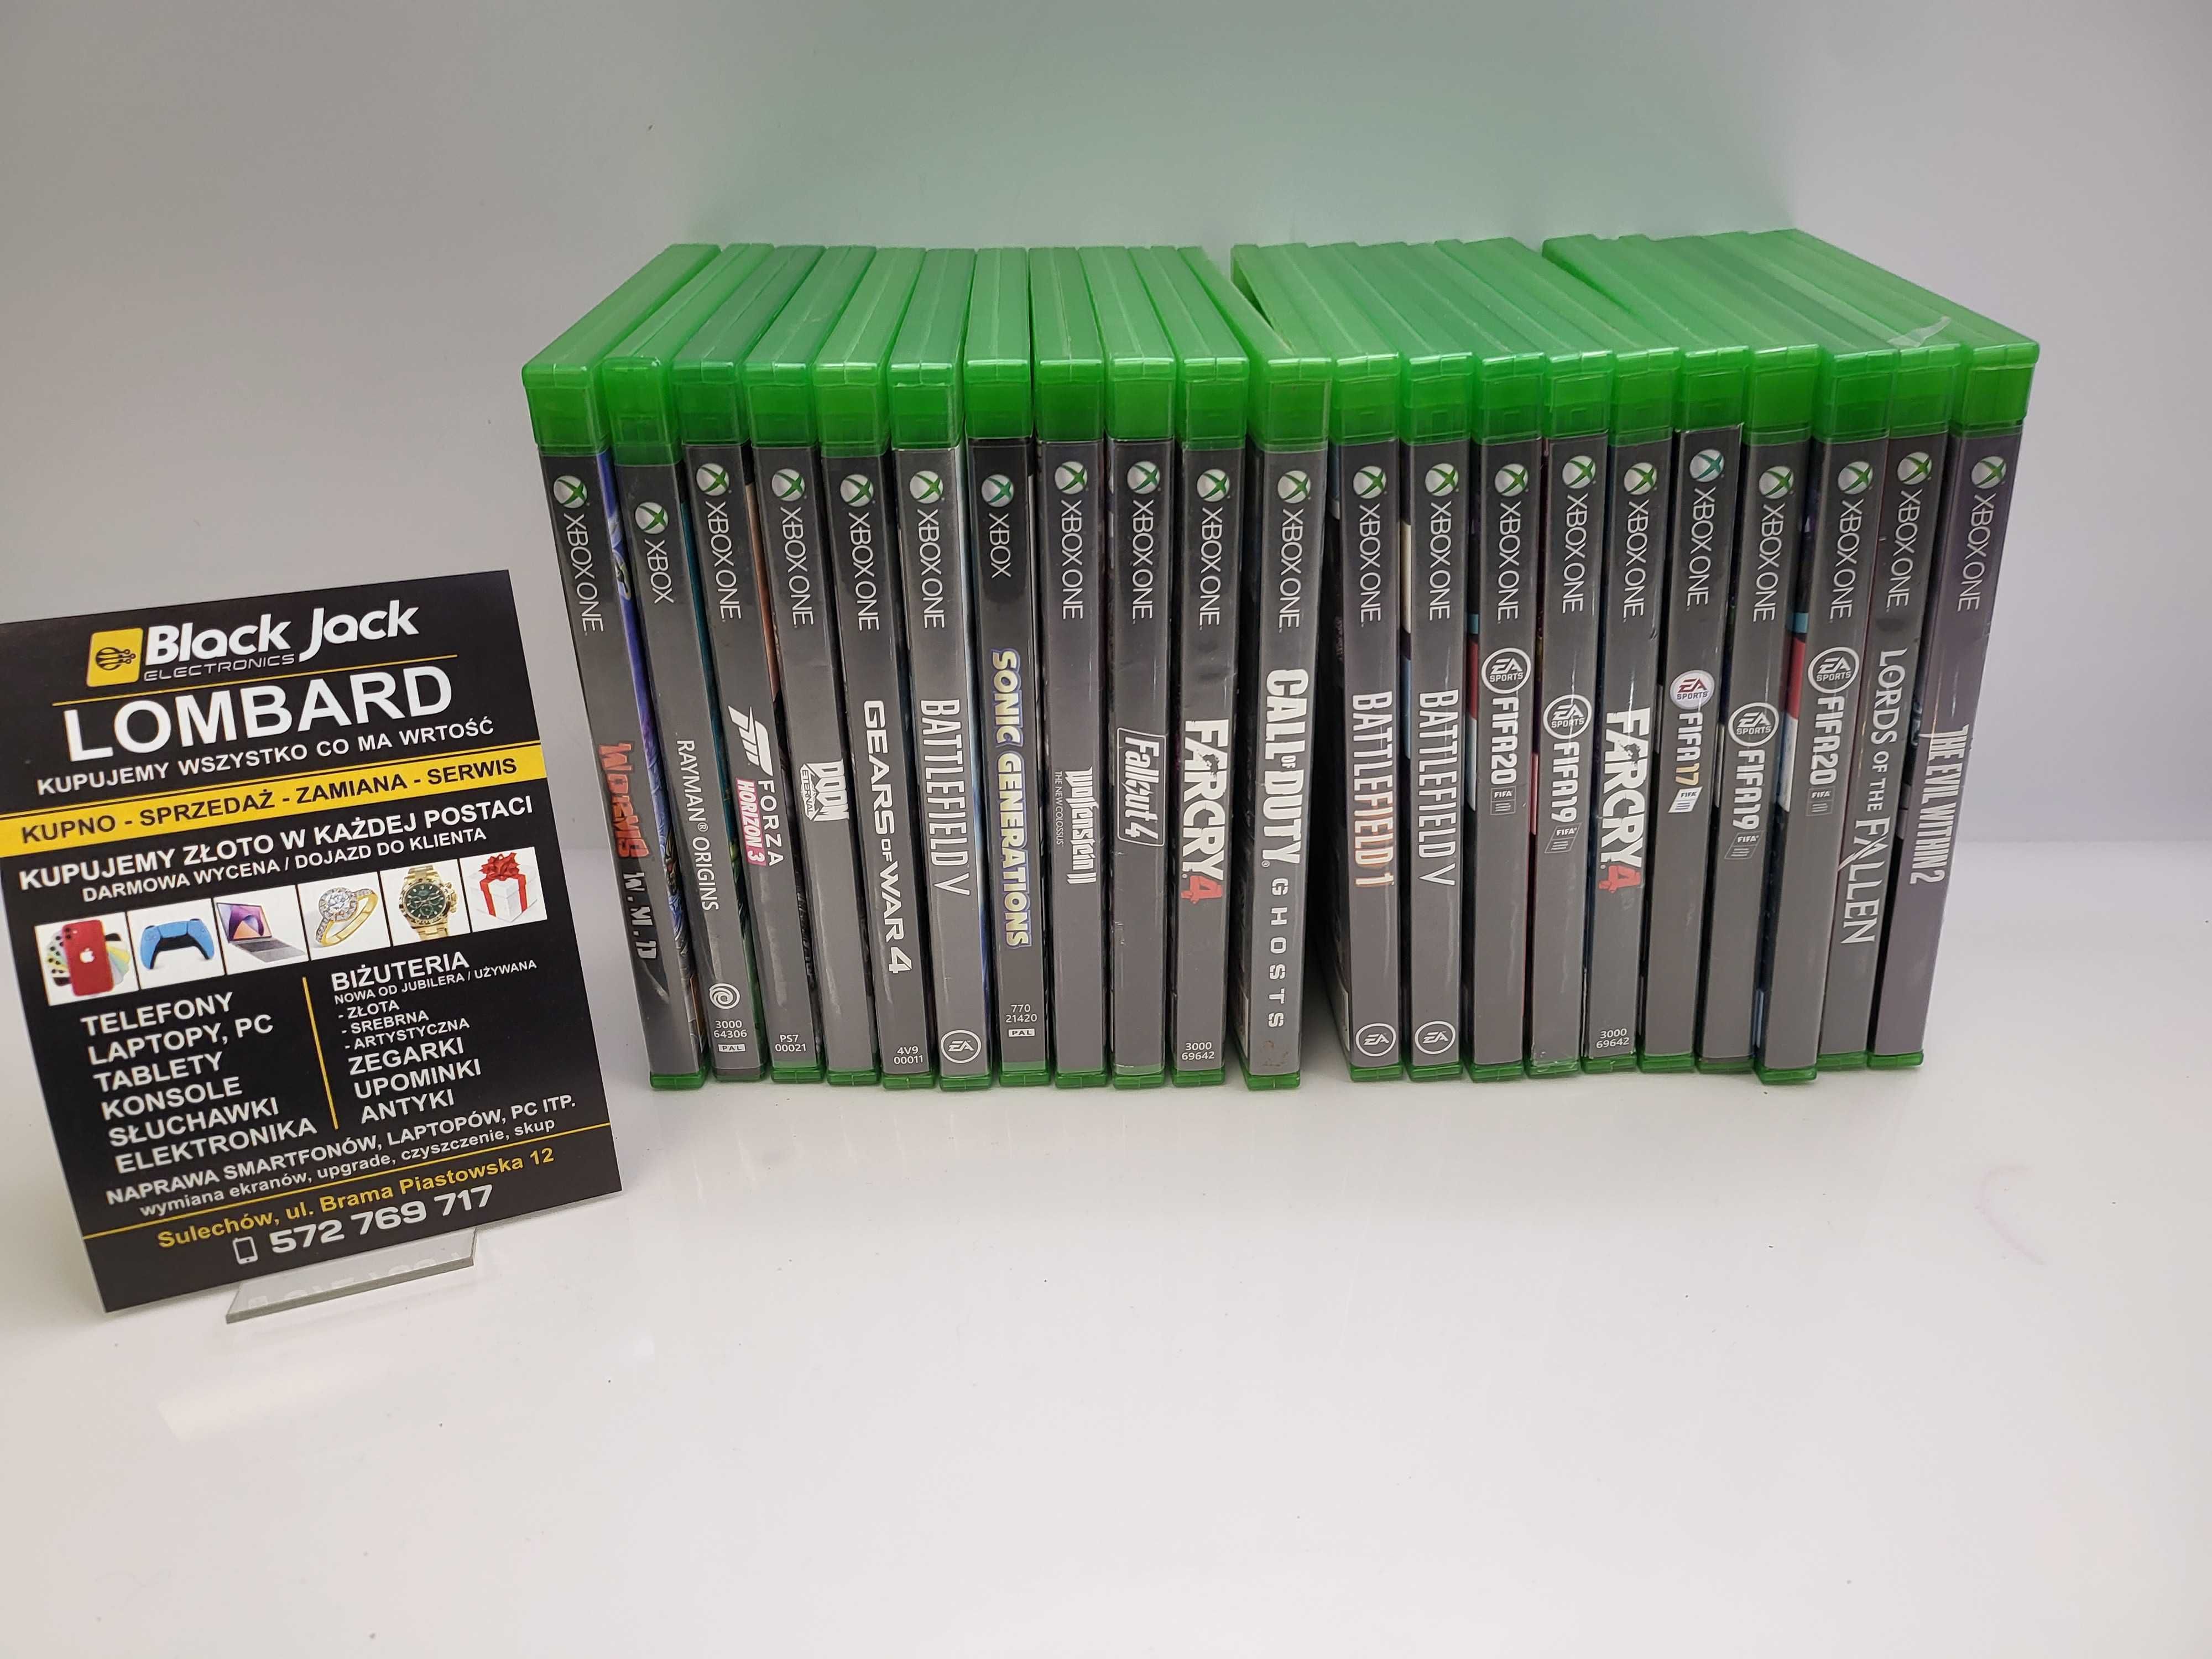 Xbox One S X Series Far Cry 4 Black Jack Sulechów